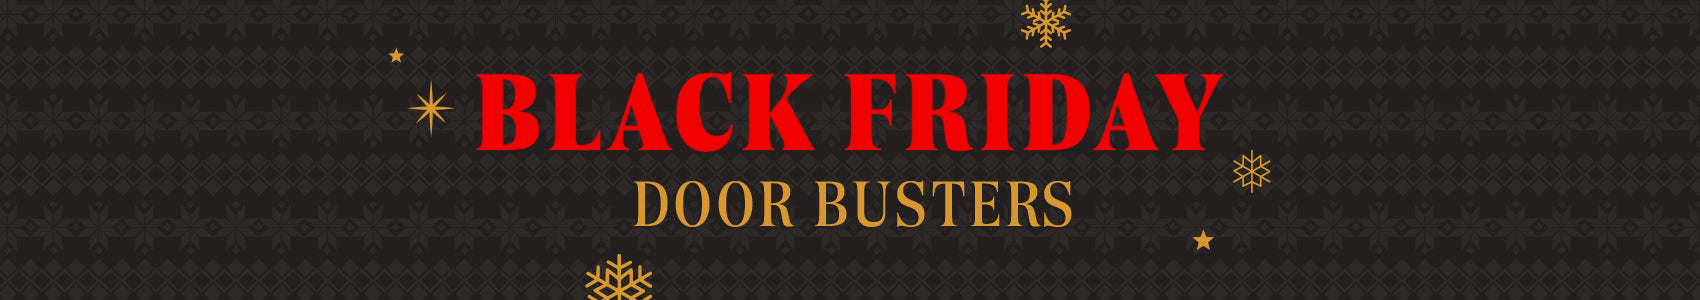 Black Friday Doorbusters